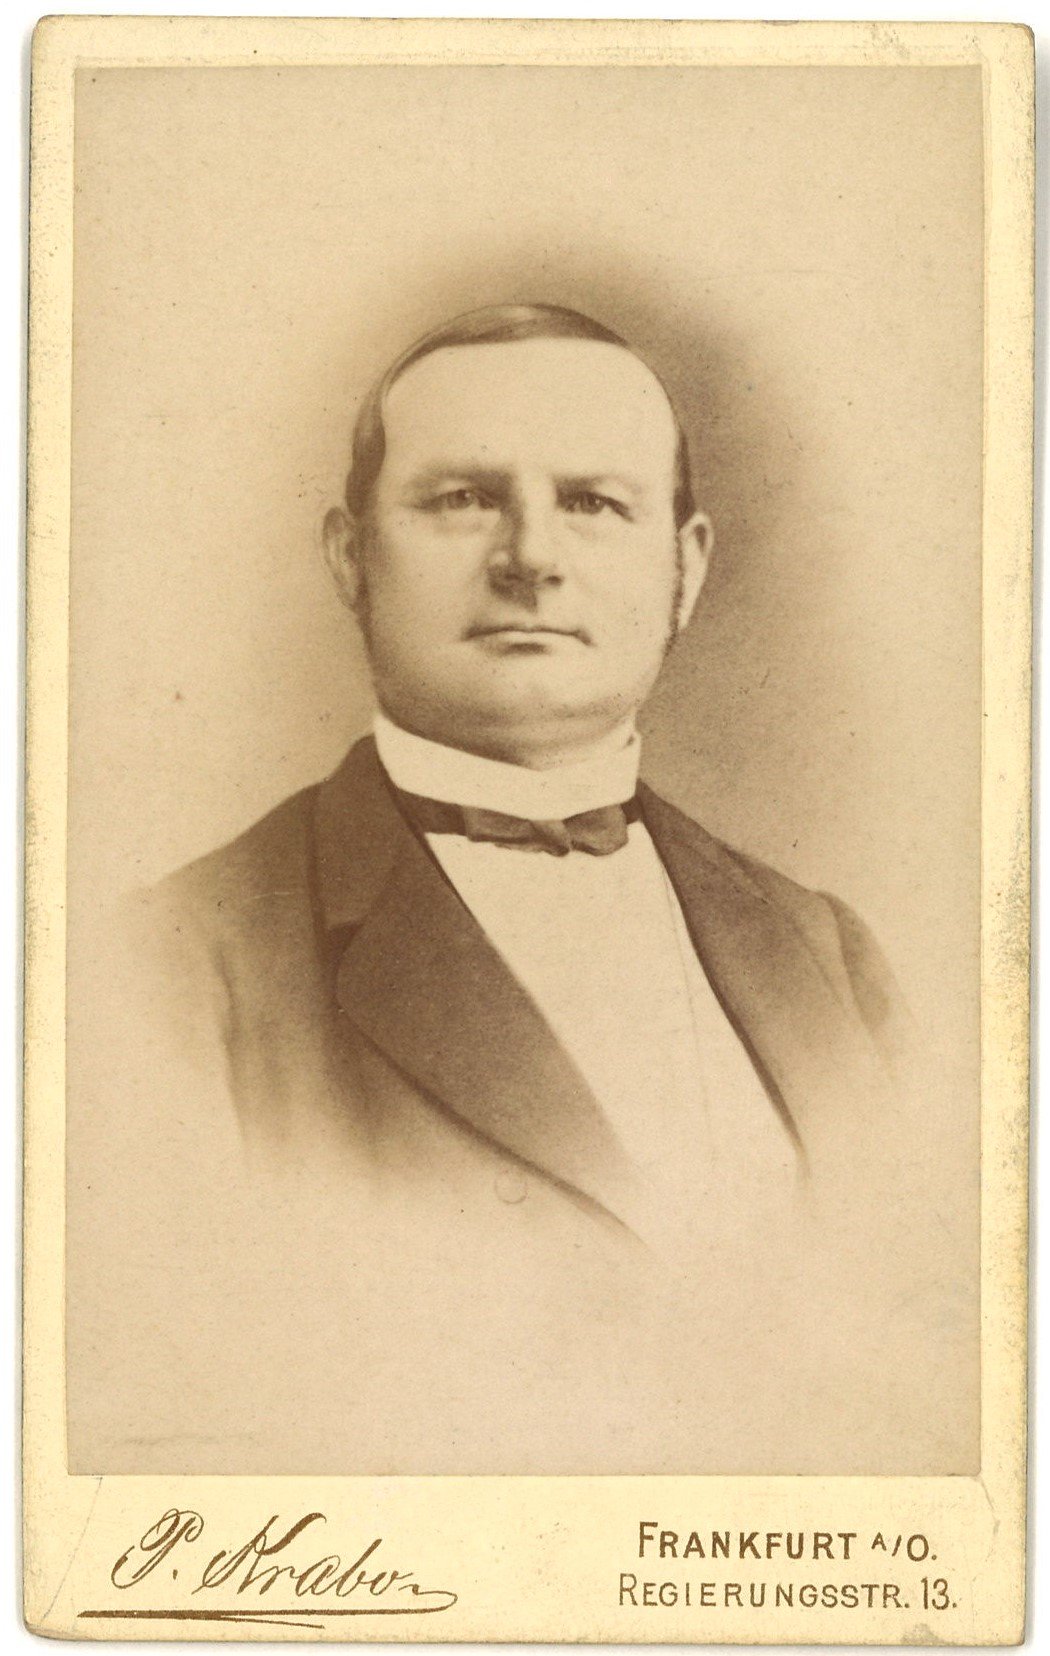 Strasser, Carl Ludwig (1817-1890), evang. Pfarrer in Güldendorf (Landesgeschichtliche Vereinigung für die Mark Brandenburg e.V., Archiv CC BY)